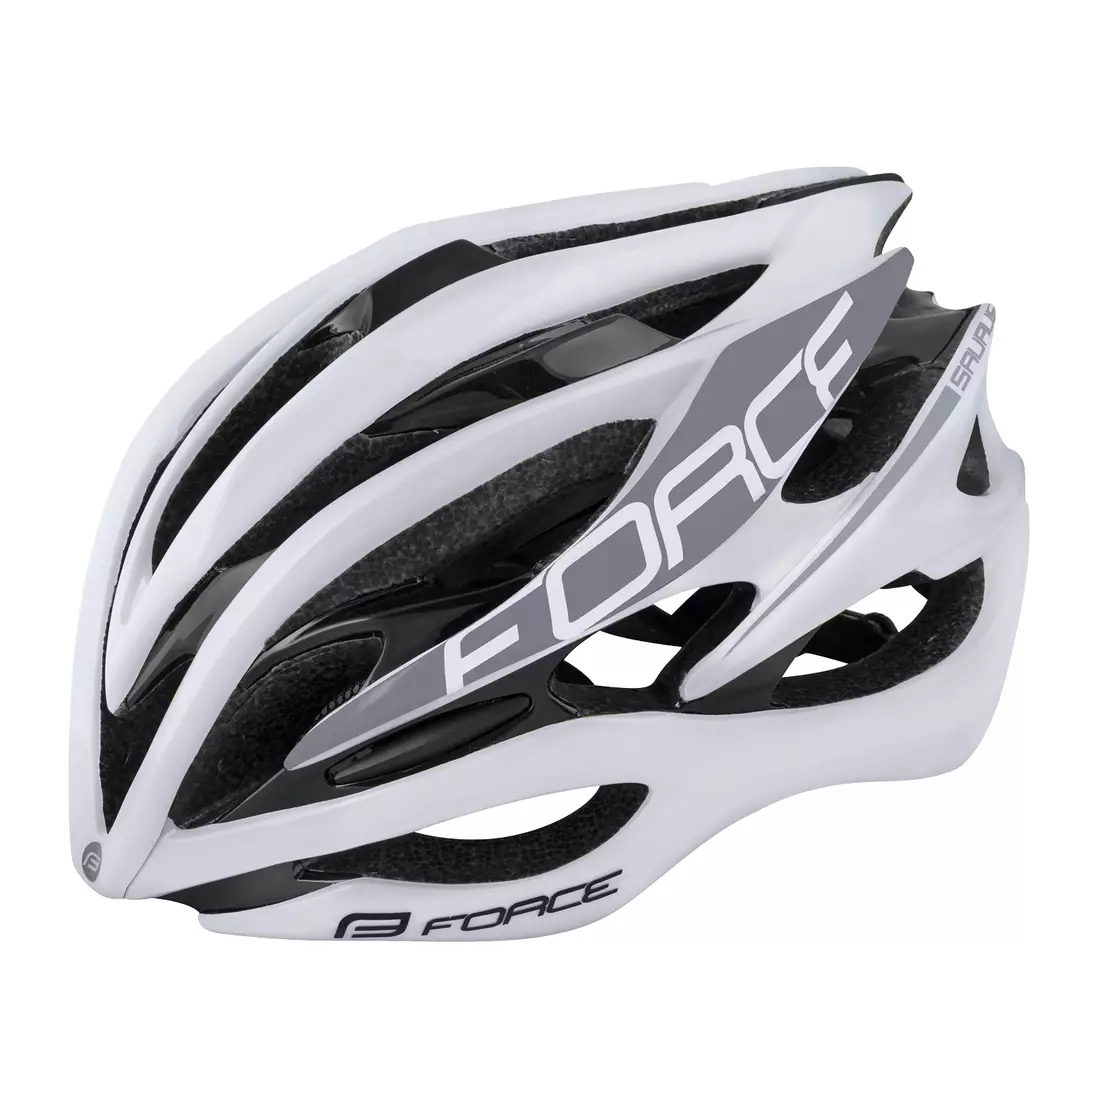 FORCE Bicycle helmet SAURUS, white